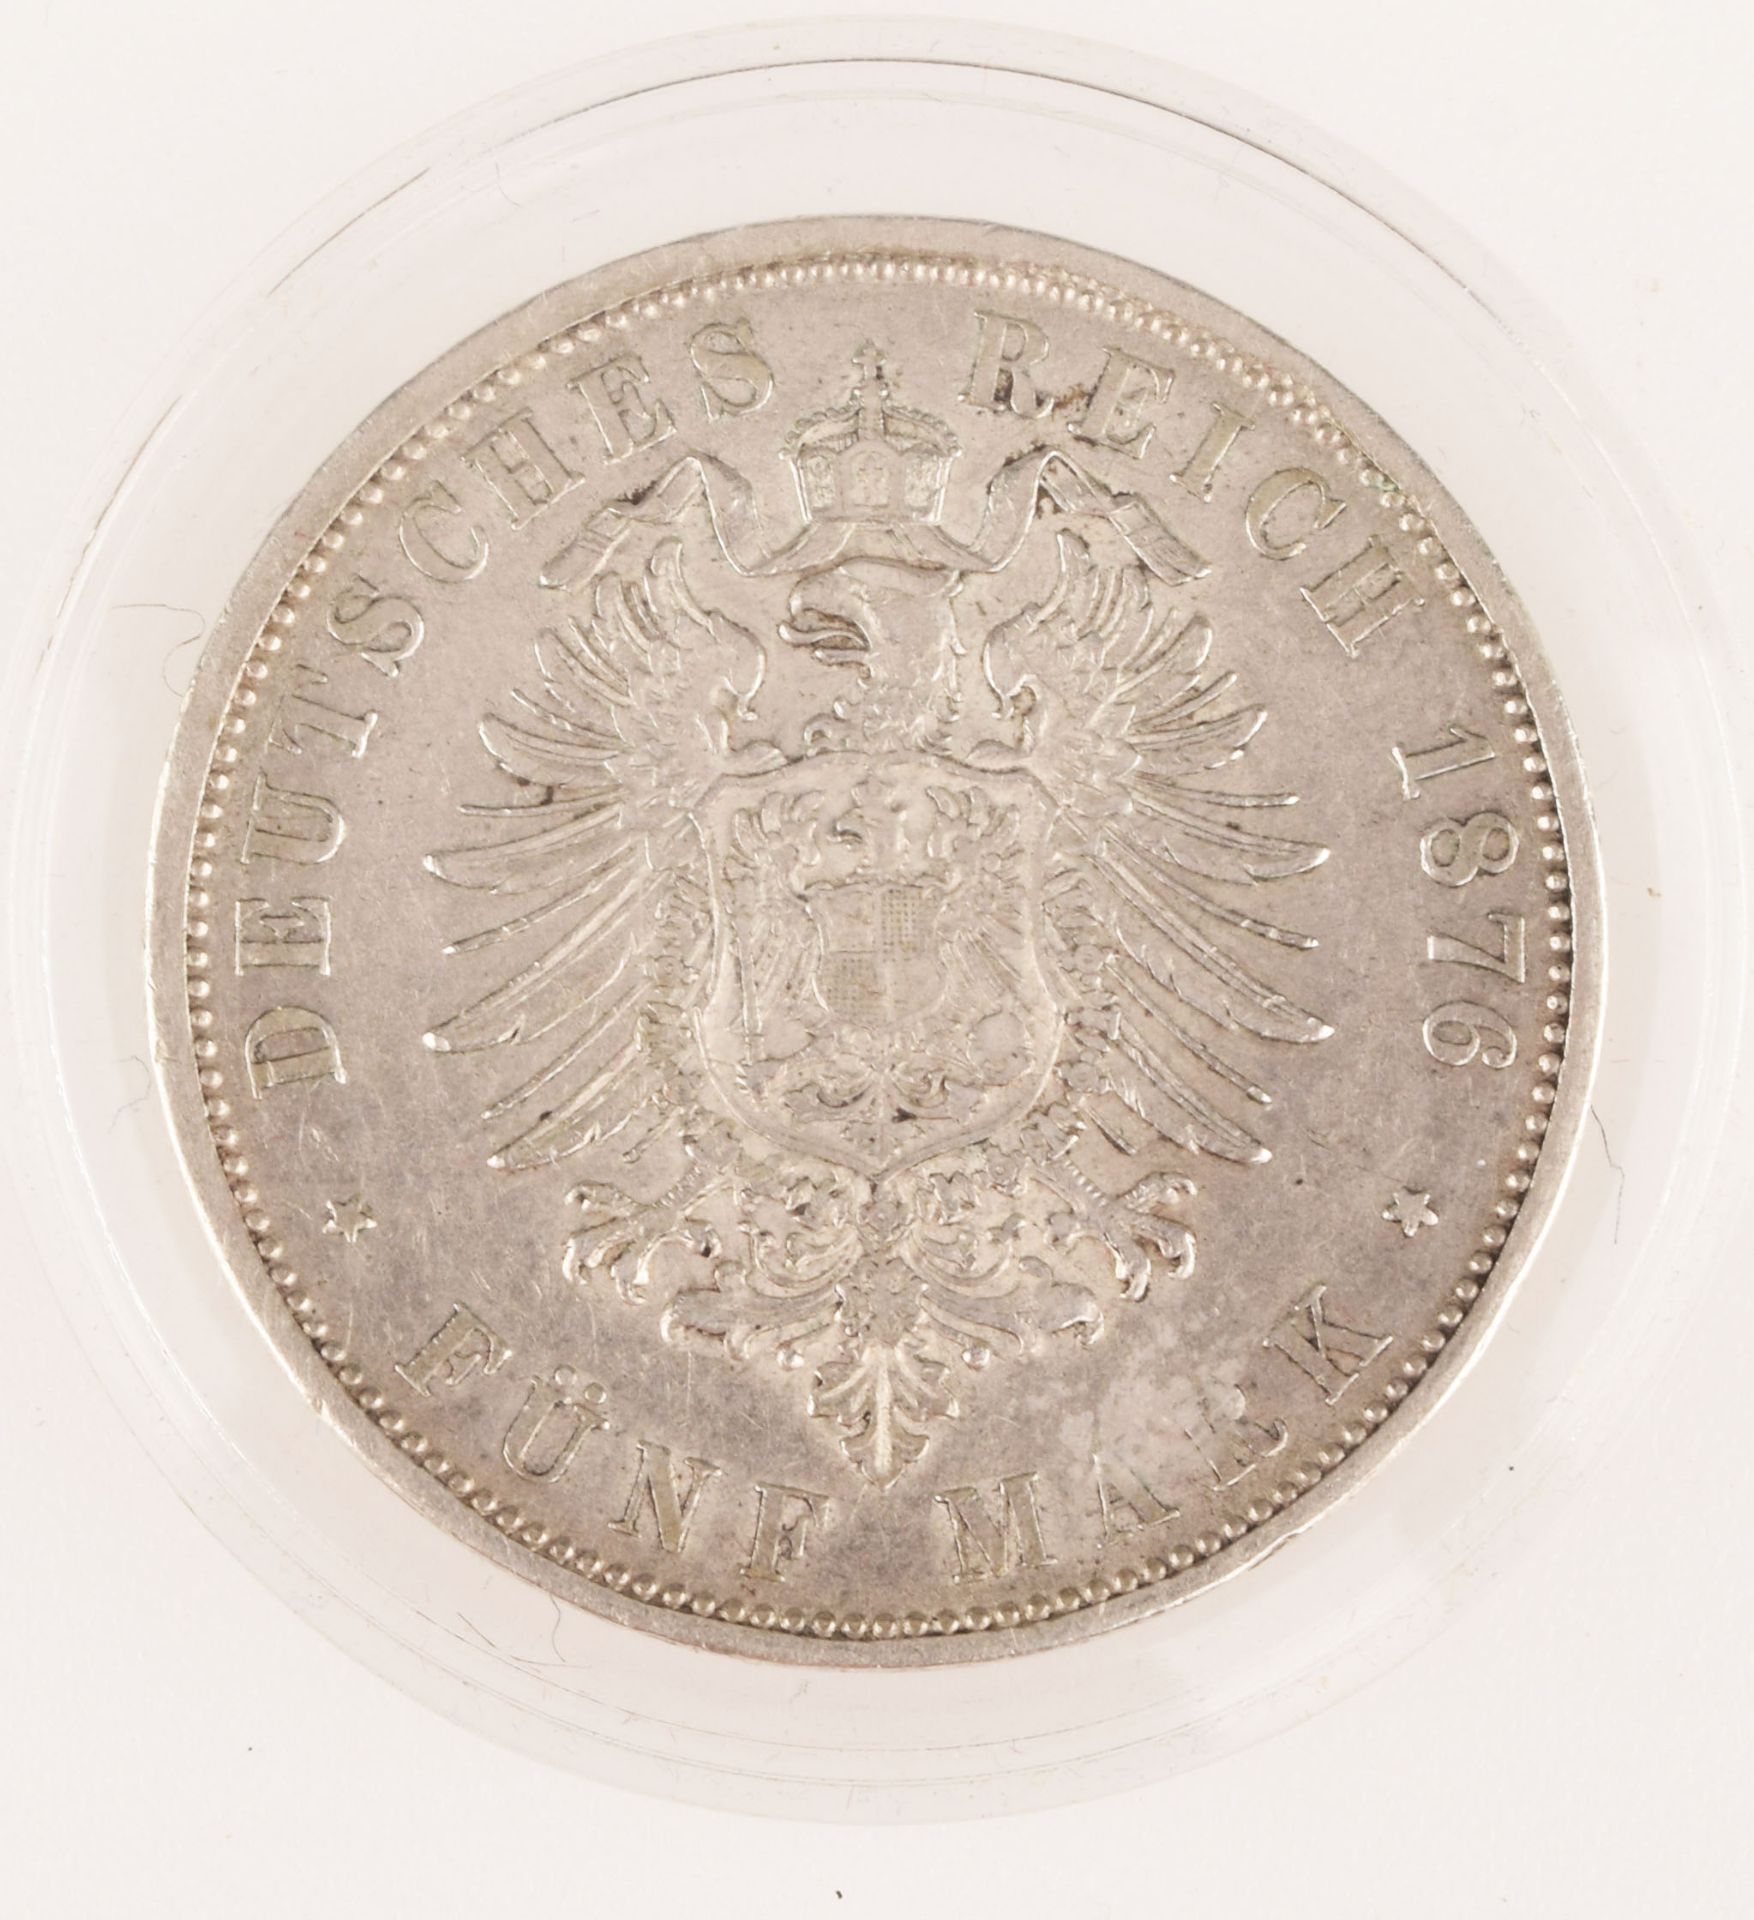 Silbermünze Kaiserreich - Württemberg 1876 5 Mark in Silber, av. Karl König von Württemberg Kopf - Image 3 of 3